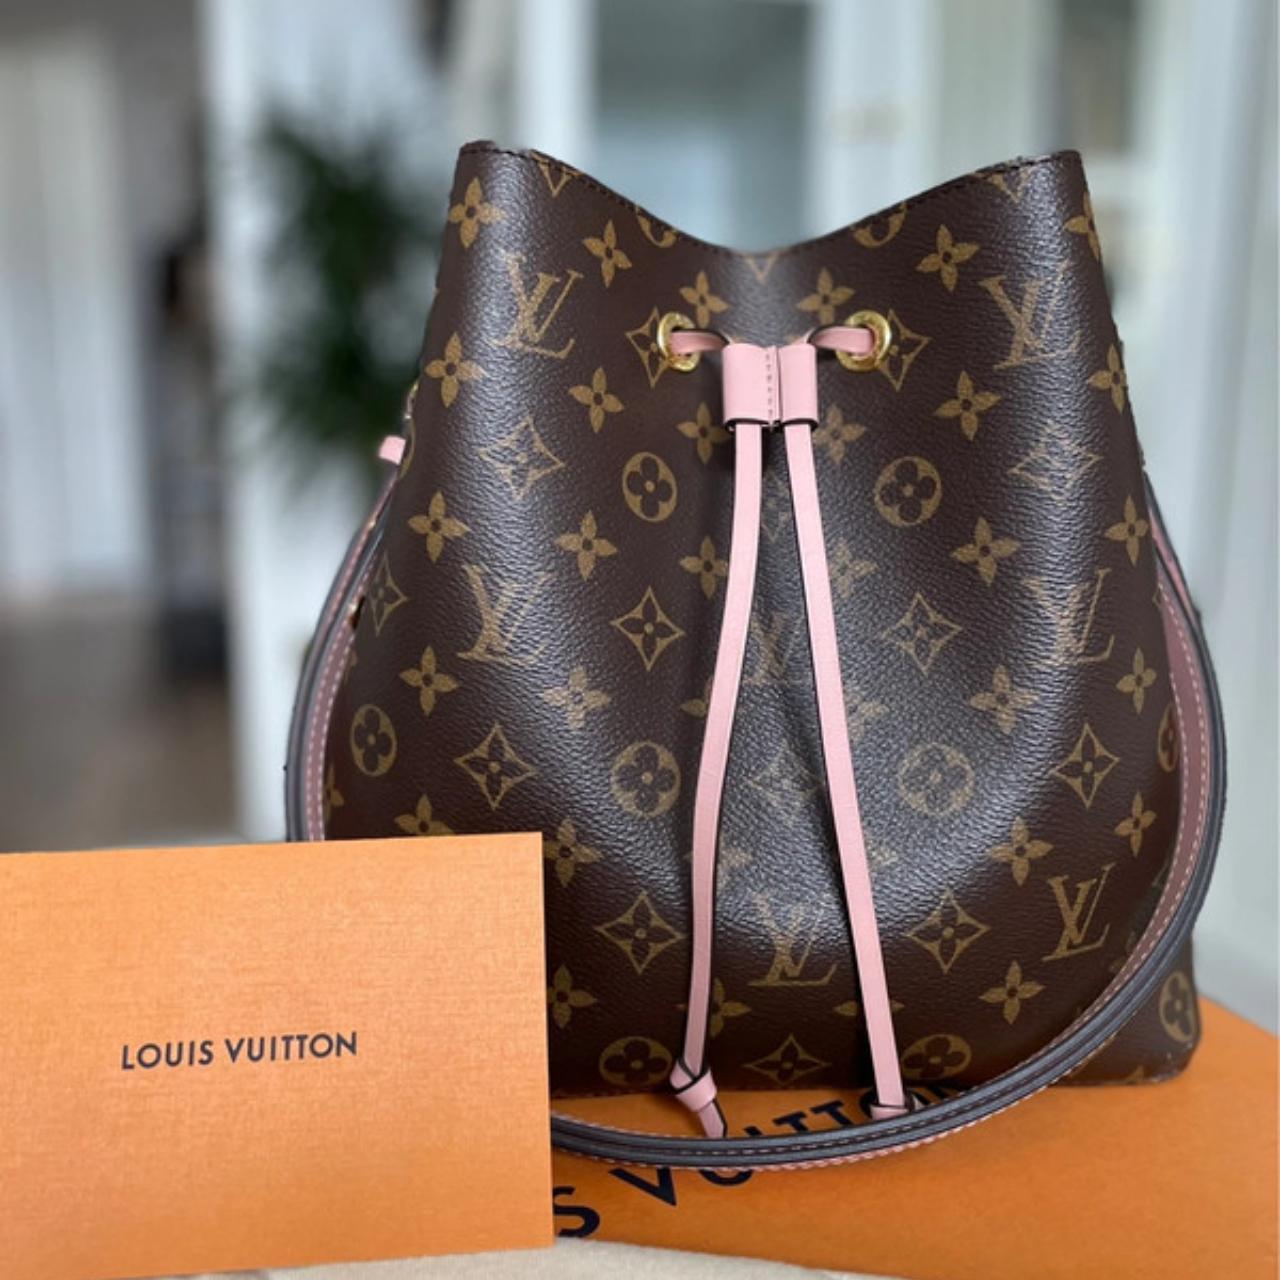 Louis Vuitton women's handbags 100% authentic, comes... - Depop